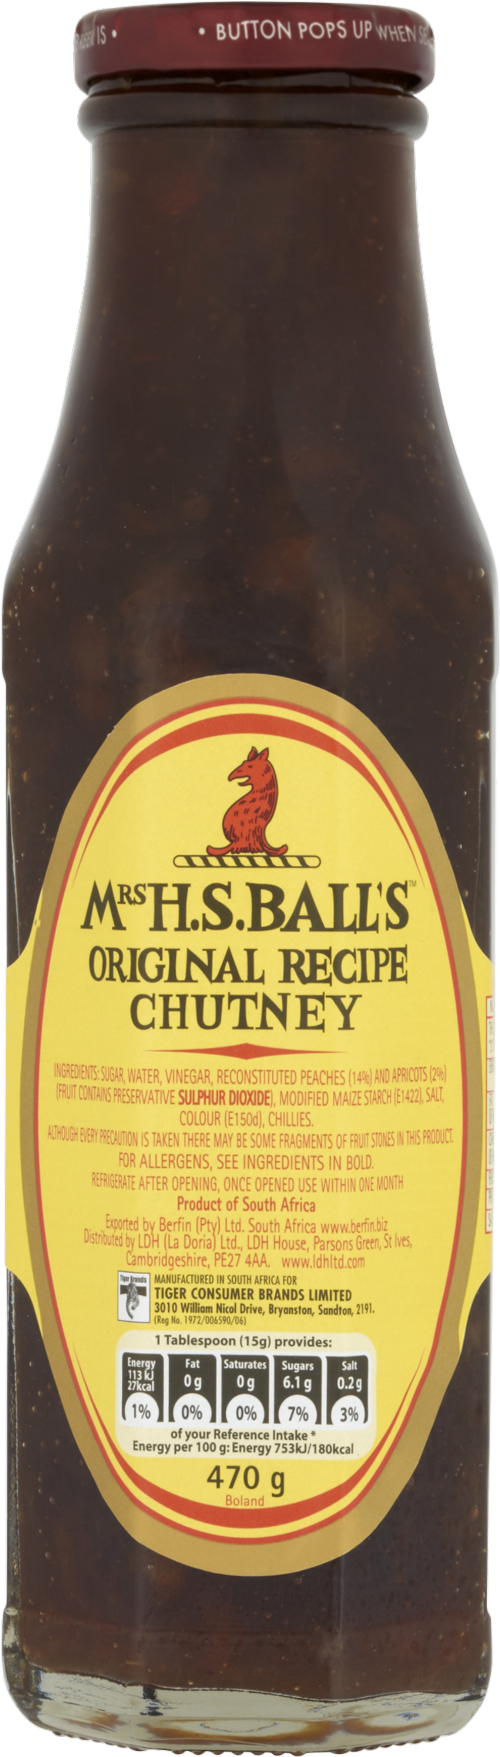 MRS H.S. BALL'S Original Recipe Chutney 470g